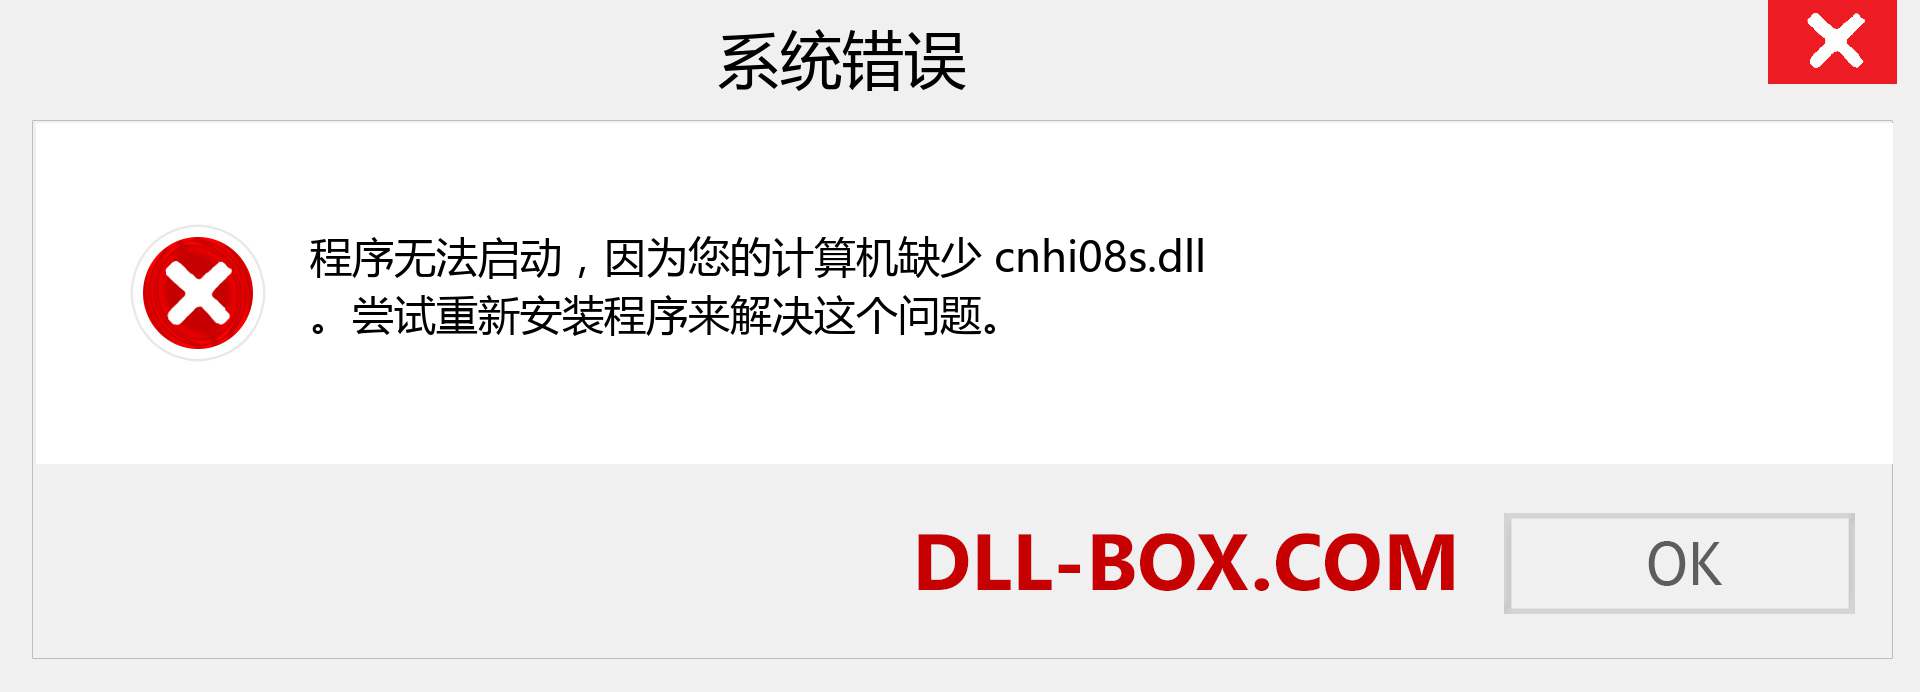 cnhi08s.dll 文件丢失？。 适用于 Windows 7、8、10 的下载 - 修复 Windows、照片、图像上的 cnhi08s dll 丢失错误